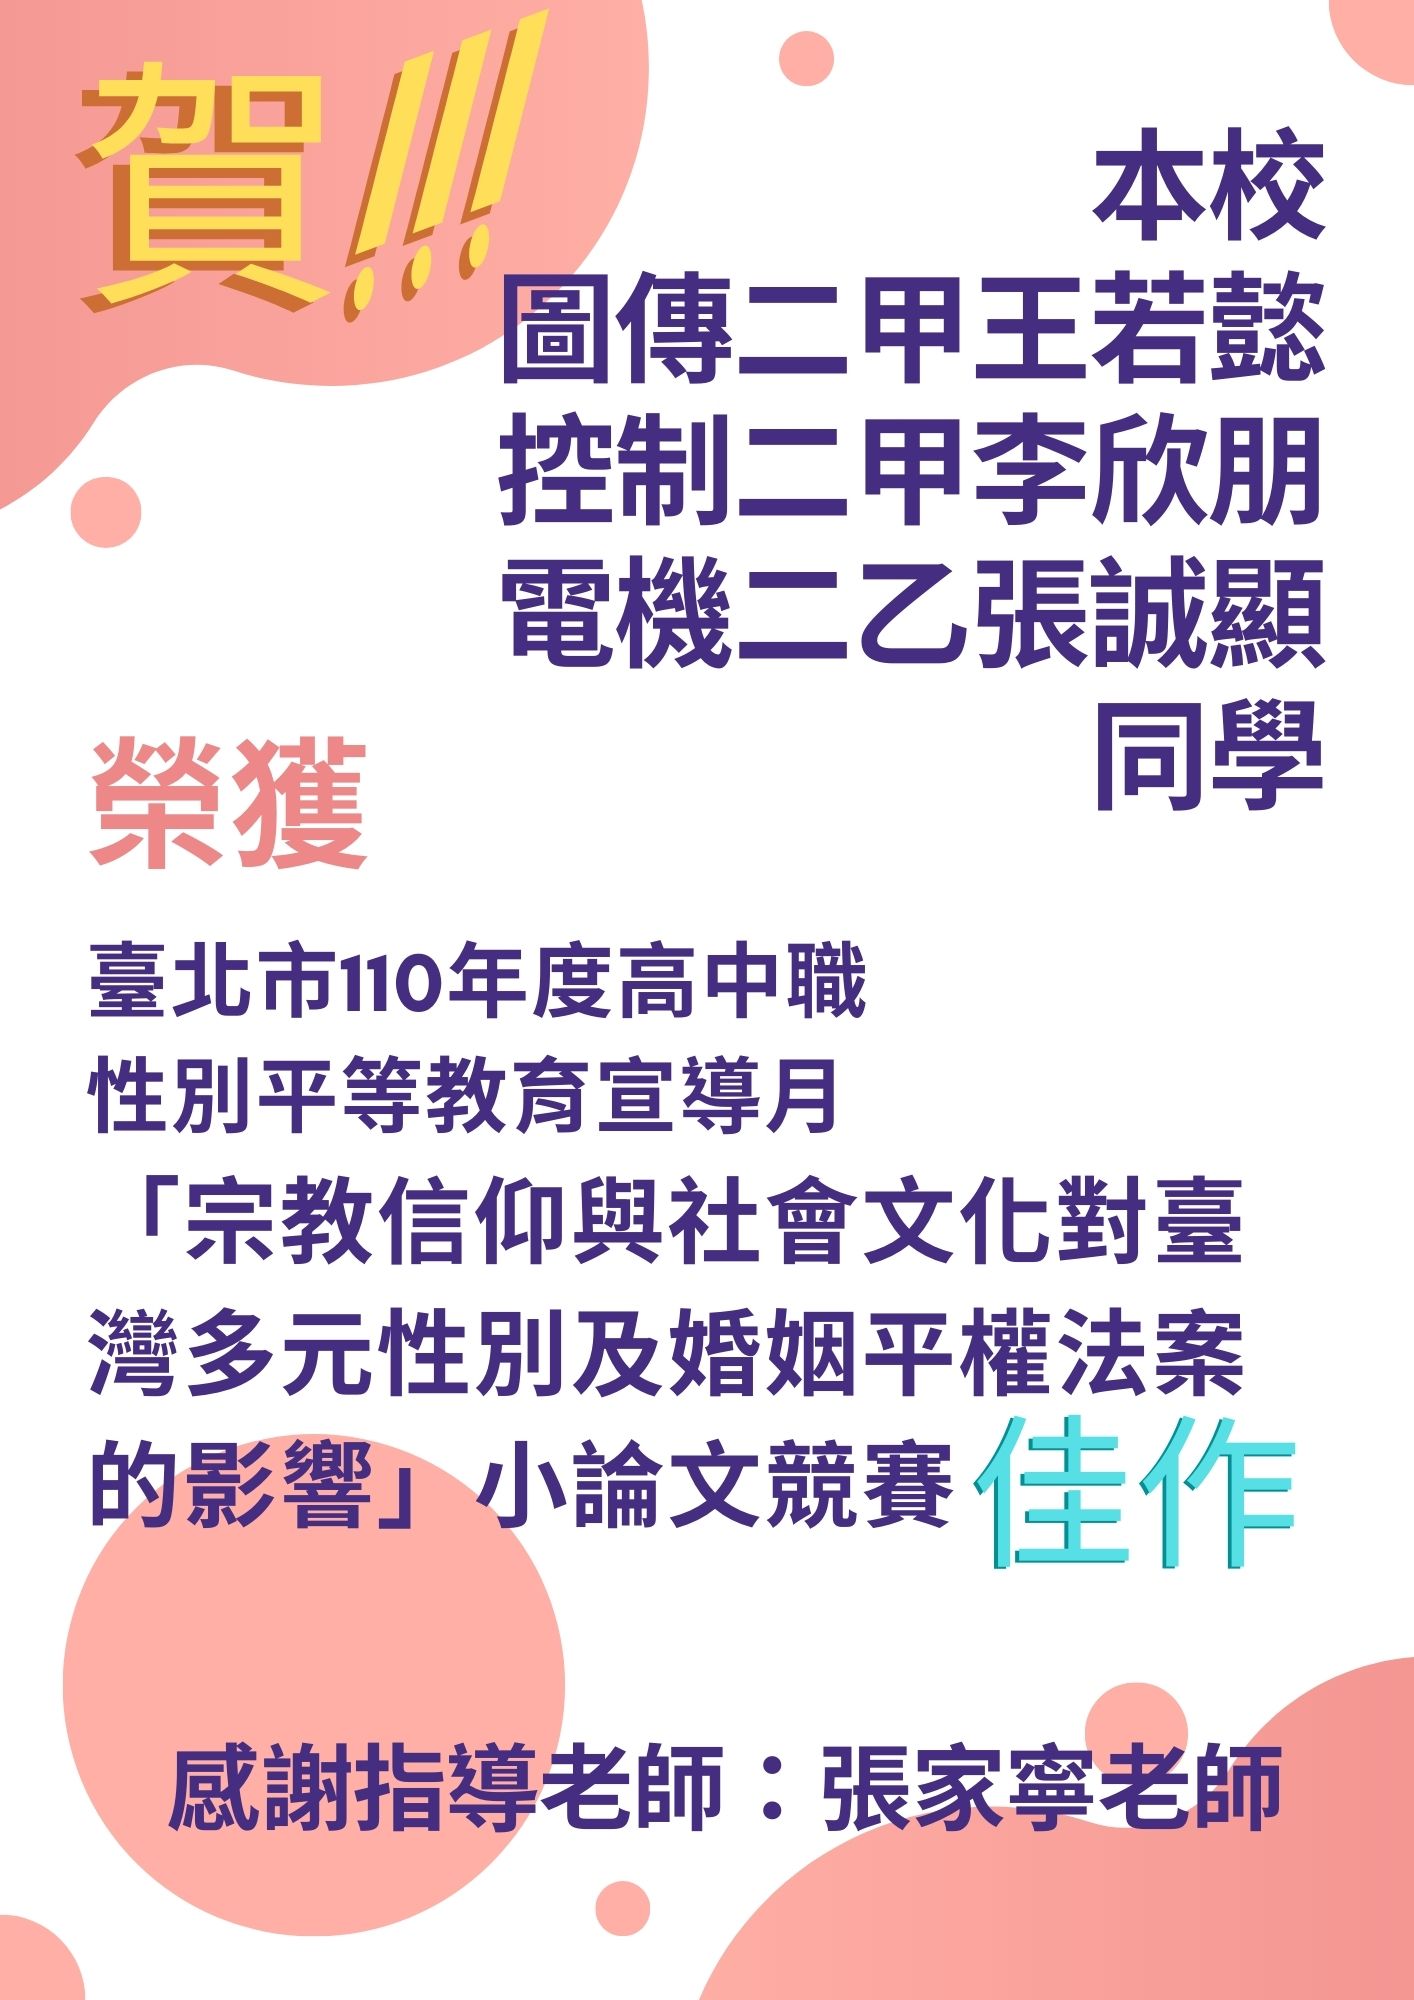 臺北市110年度高中職性別平等教育宣導月小論文比賽佳作